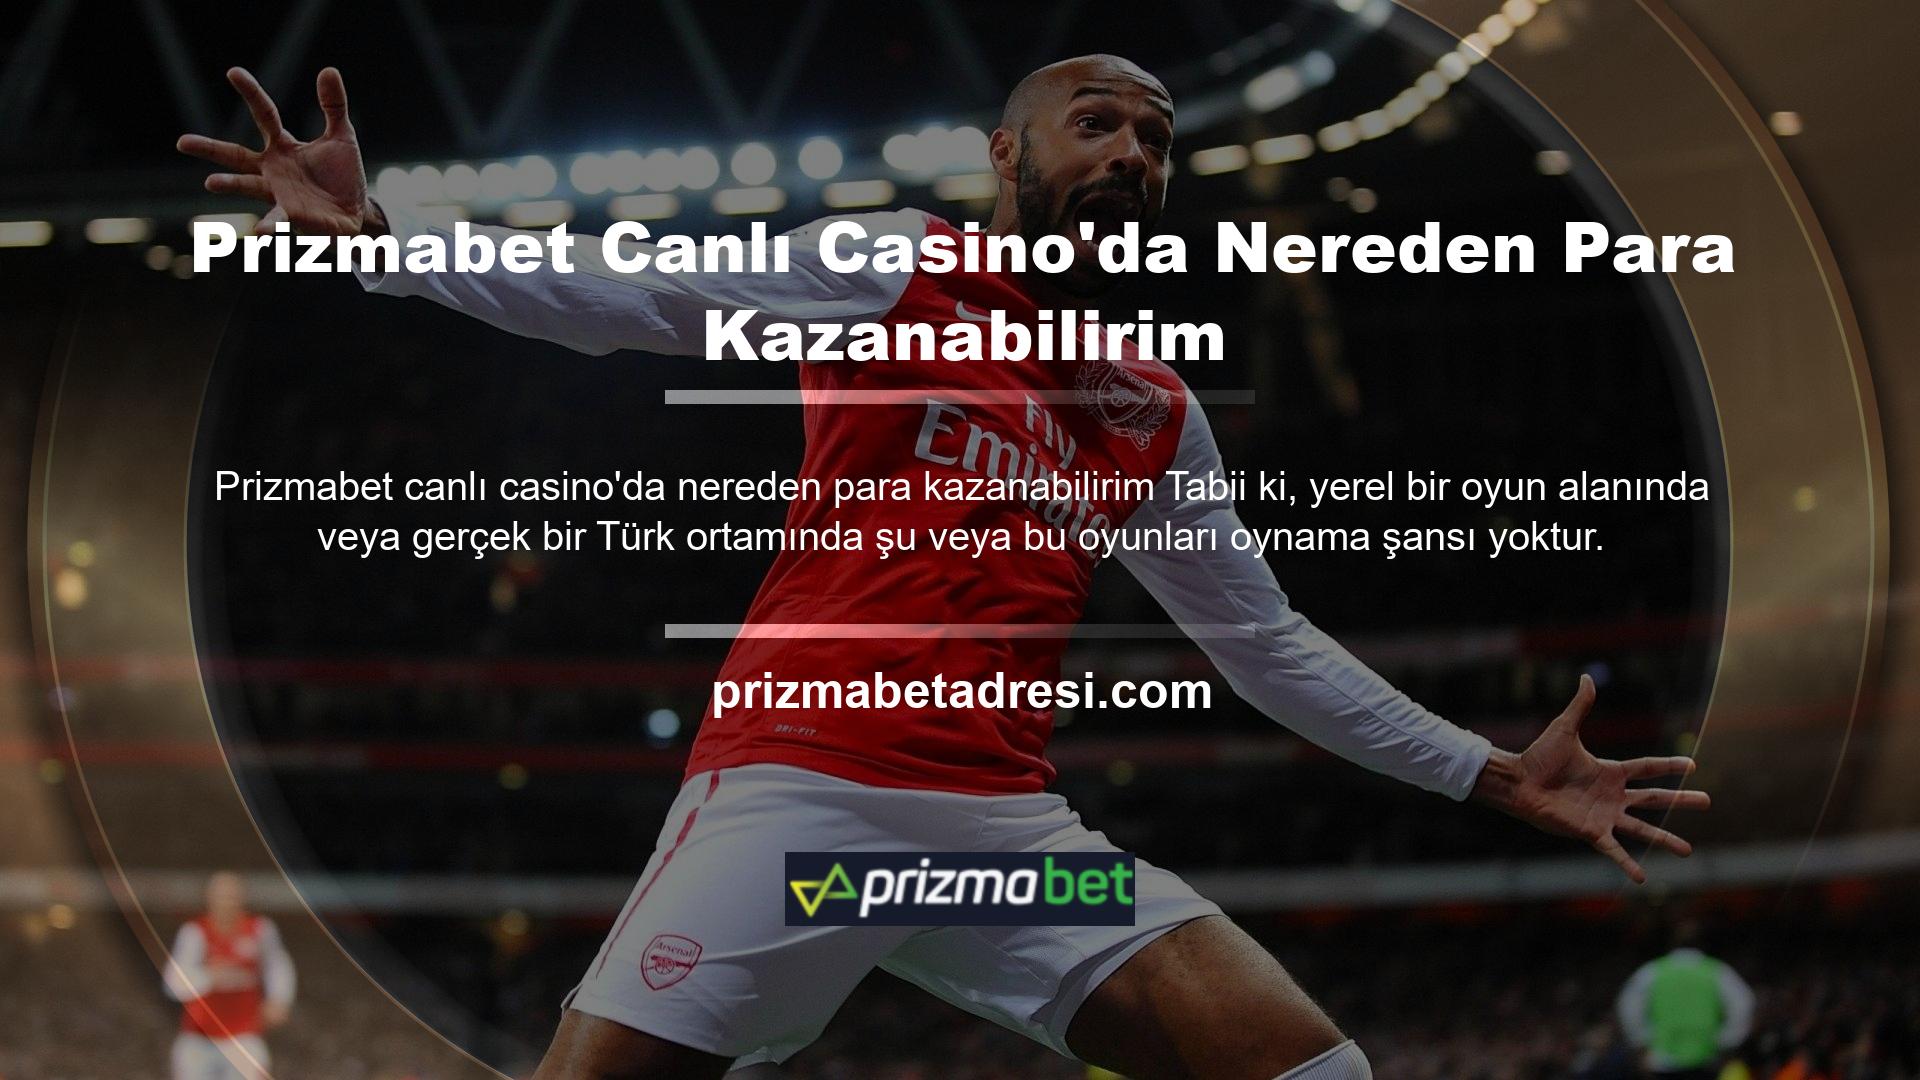 Peki nerede oynayabiliriz? Türkiye'de online hizmet sunan yabancı oyun ve casino sitelerini kullanıyoruz